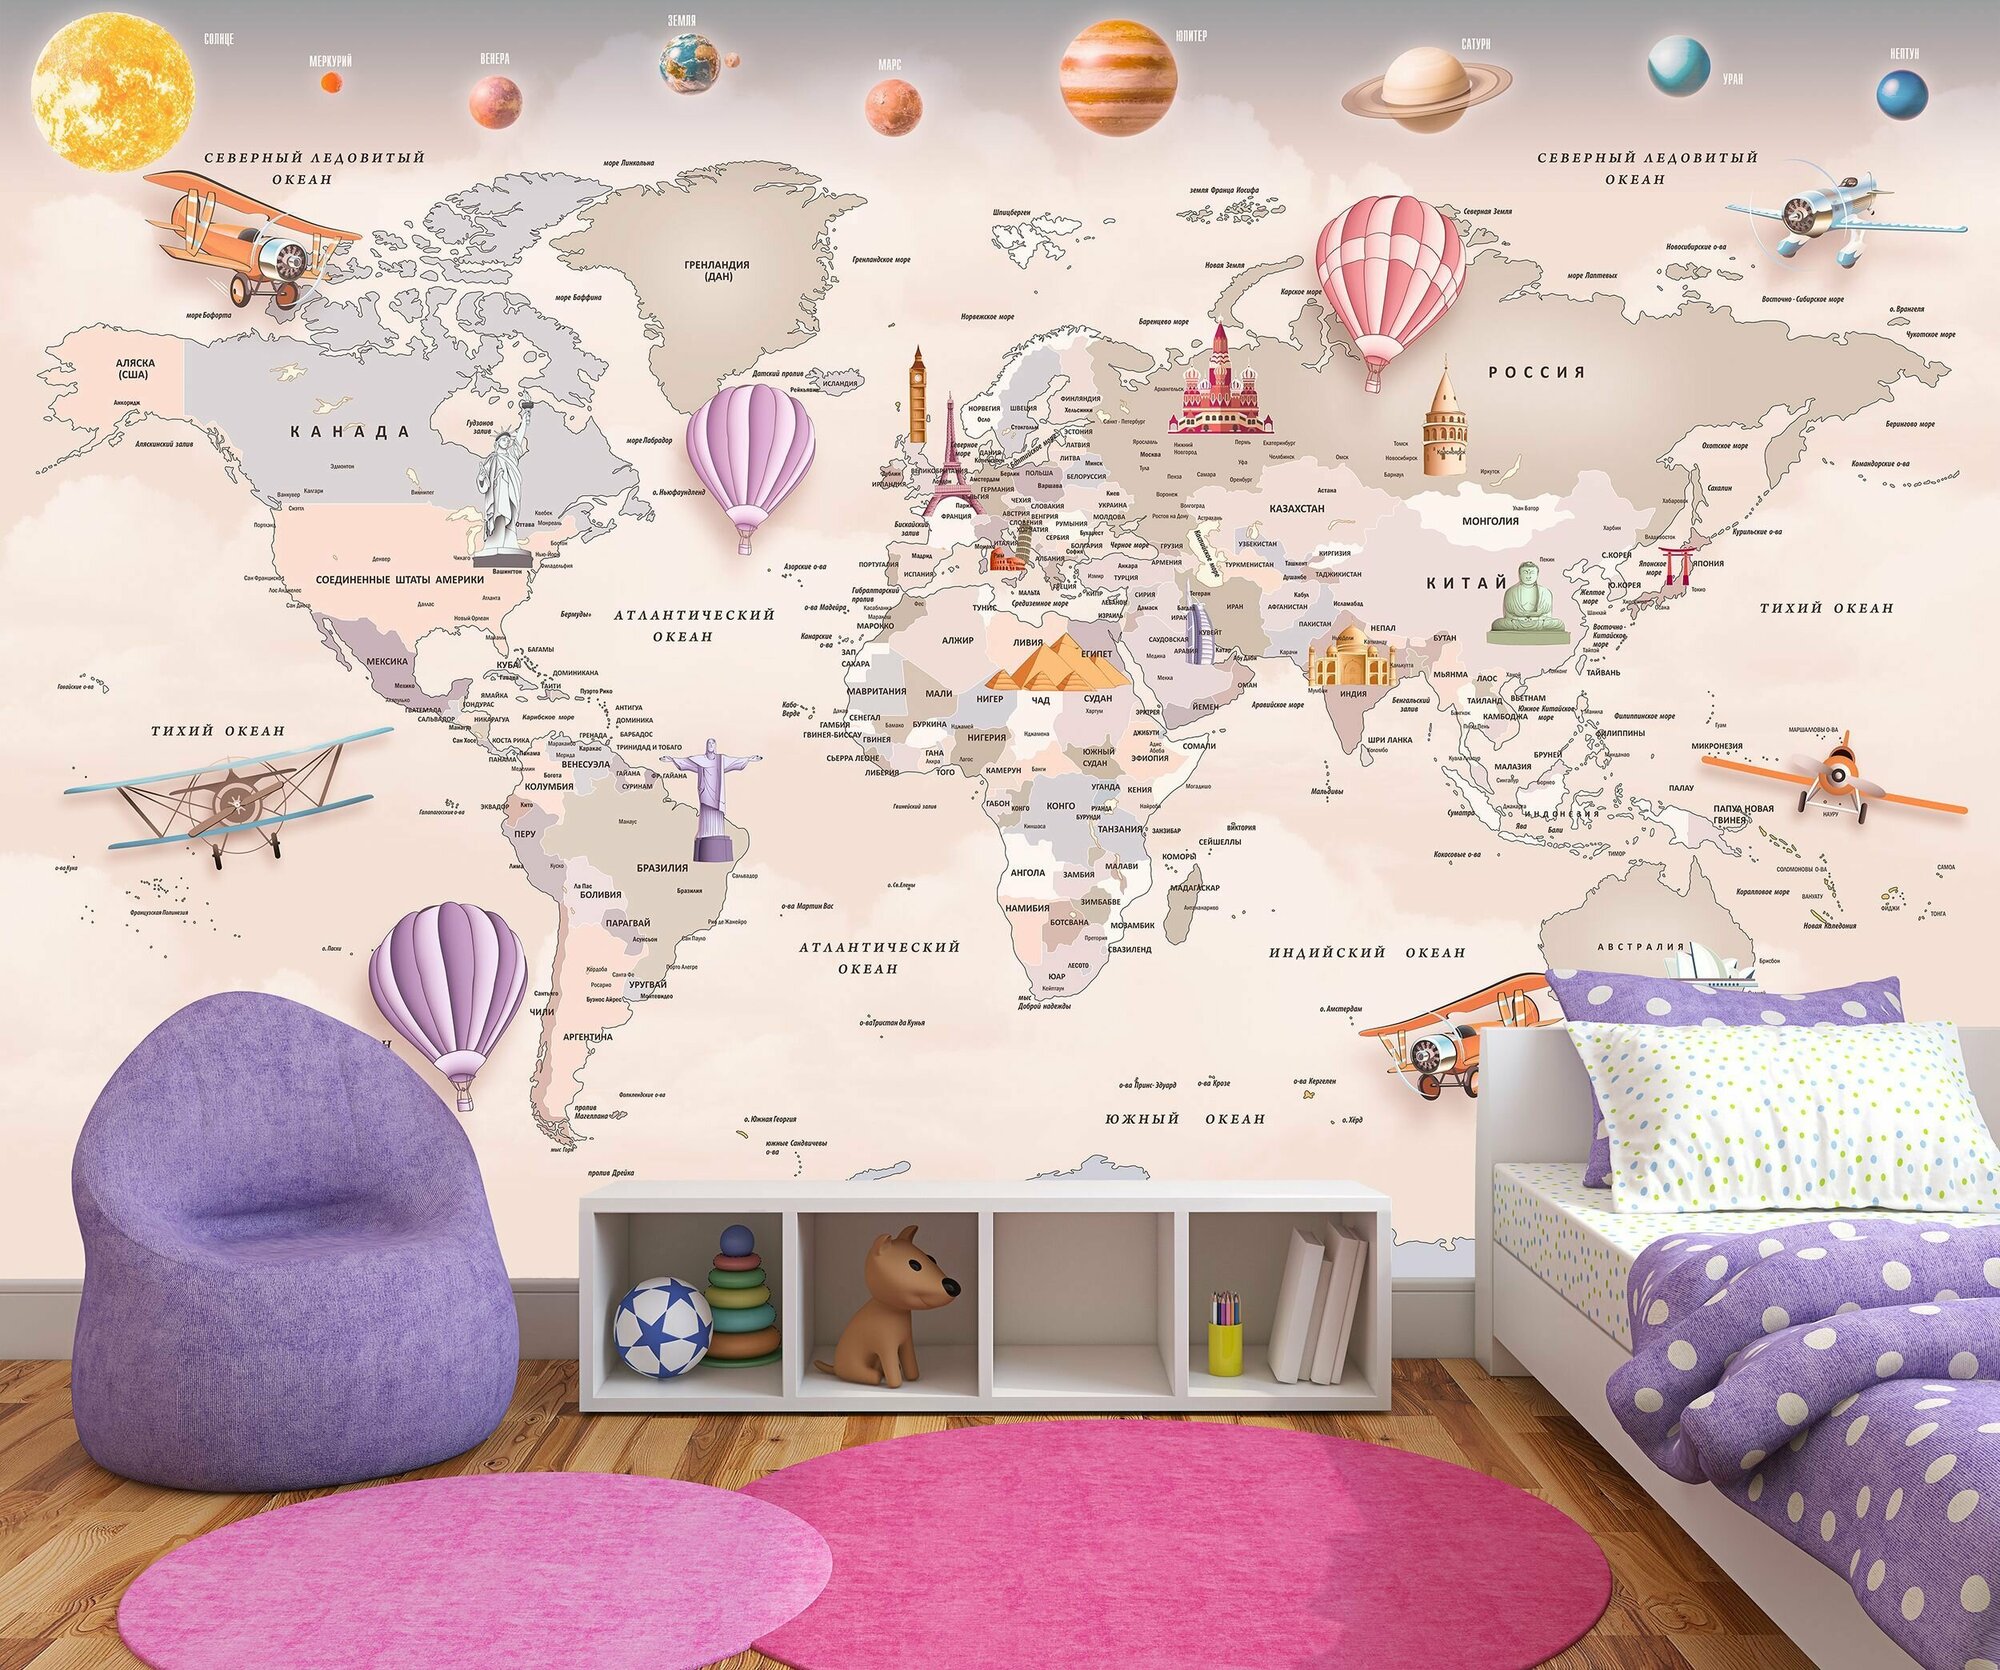 Фотообои флизелиновые 200х130см. на стену. Серия MAPS ARTDELUXE. 3д детская карта мира и планеты. Обои дизайнерские эксклюзивные для детской комнаты.